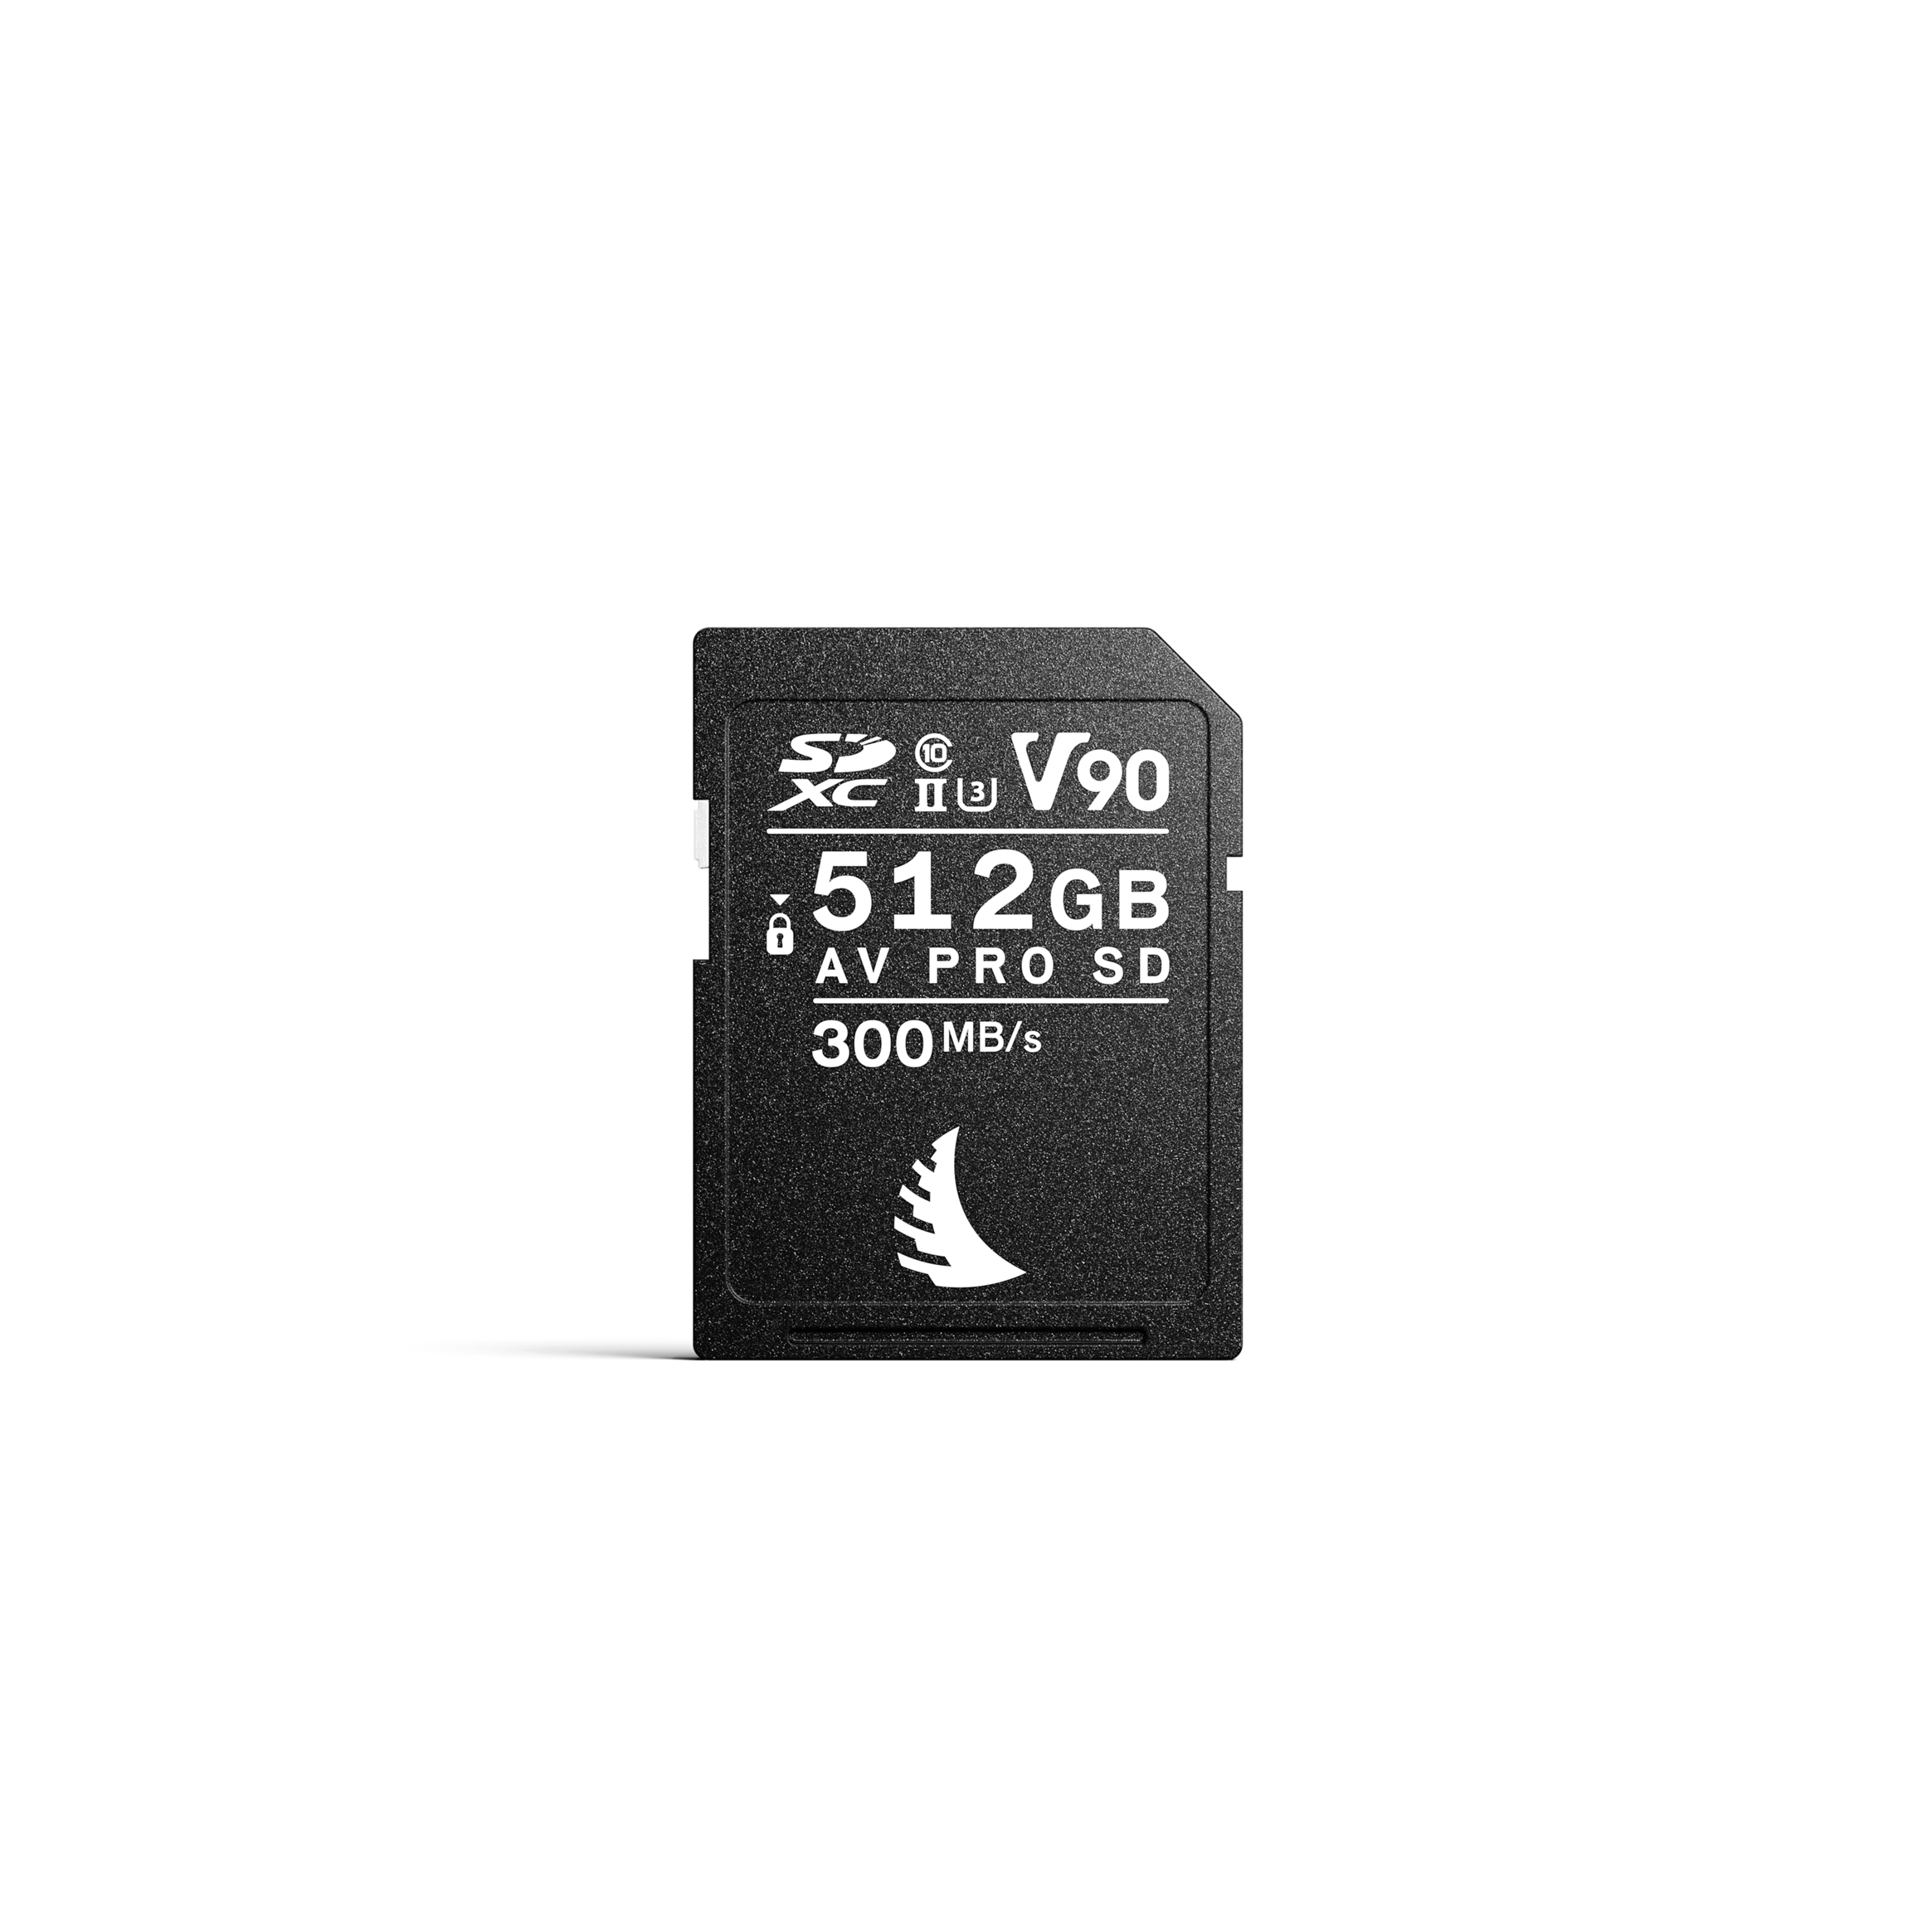 AV Pro SD MK2 512GB V90